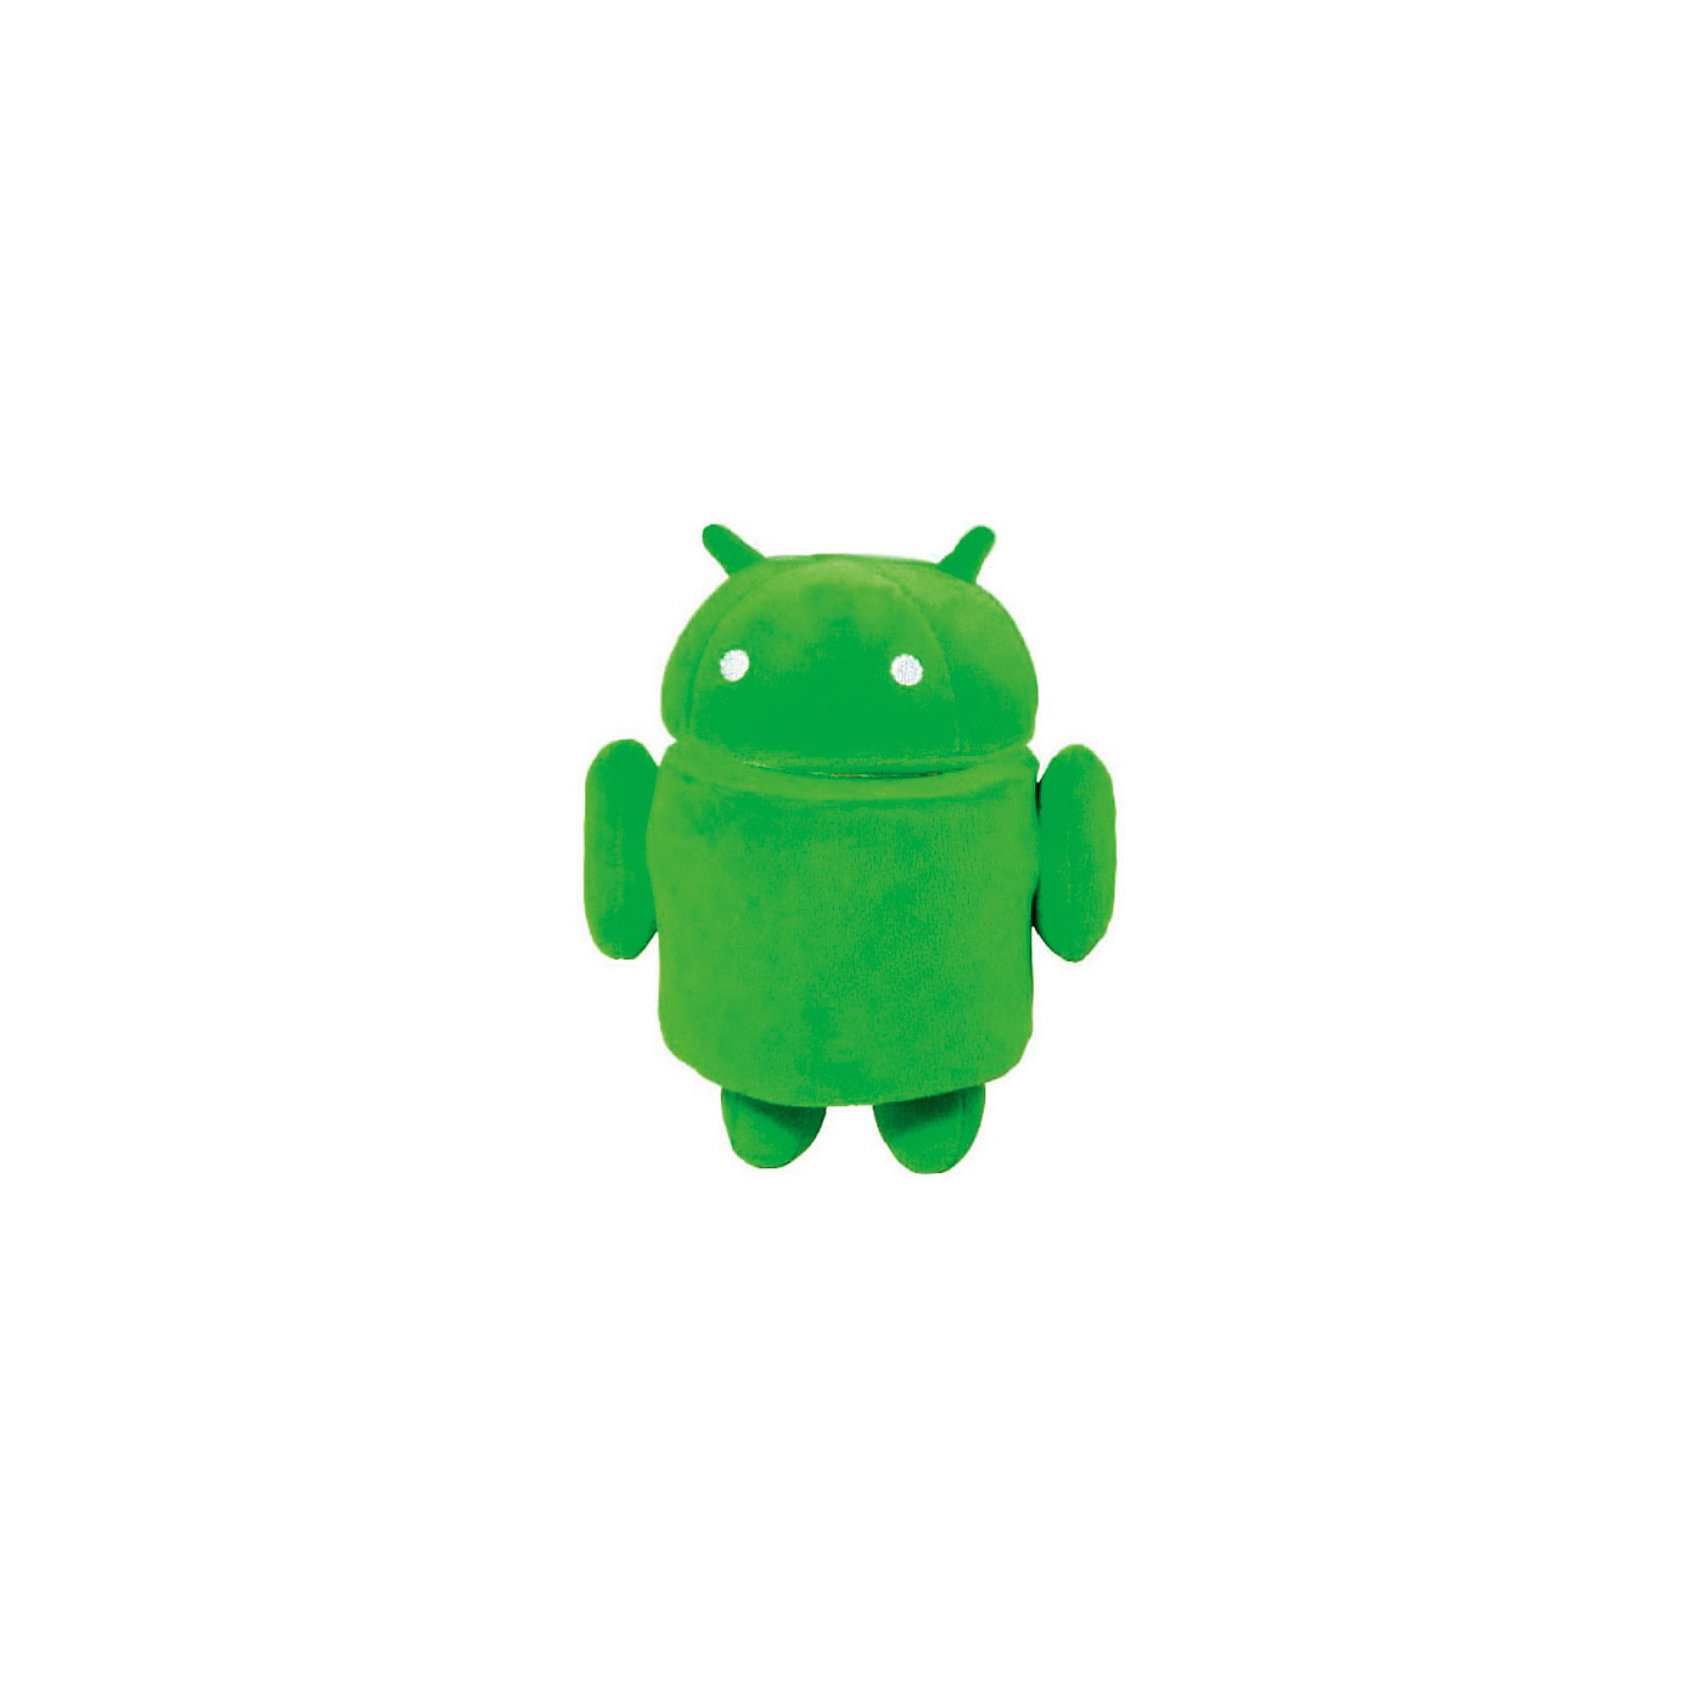 Toy android. Android игрушка. Android игрушка зеленый. Мягкая игрушка Android. Android игрушка зеленый для детей плюшевый.